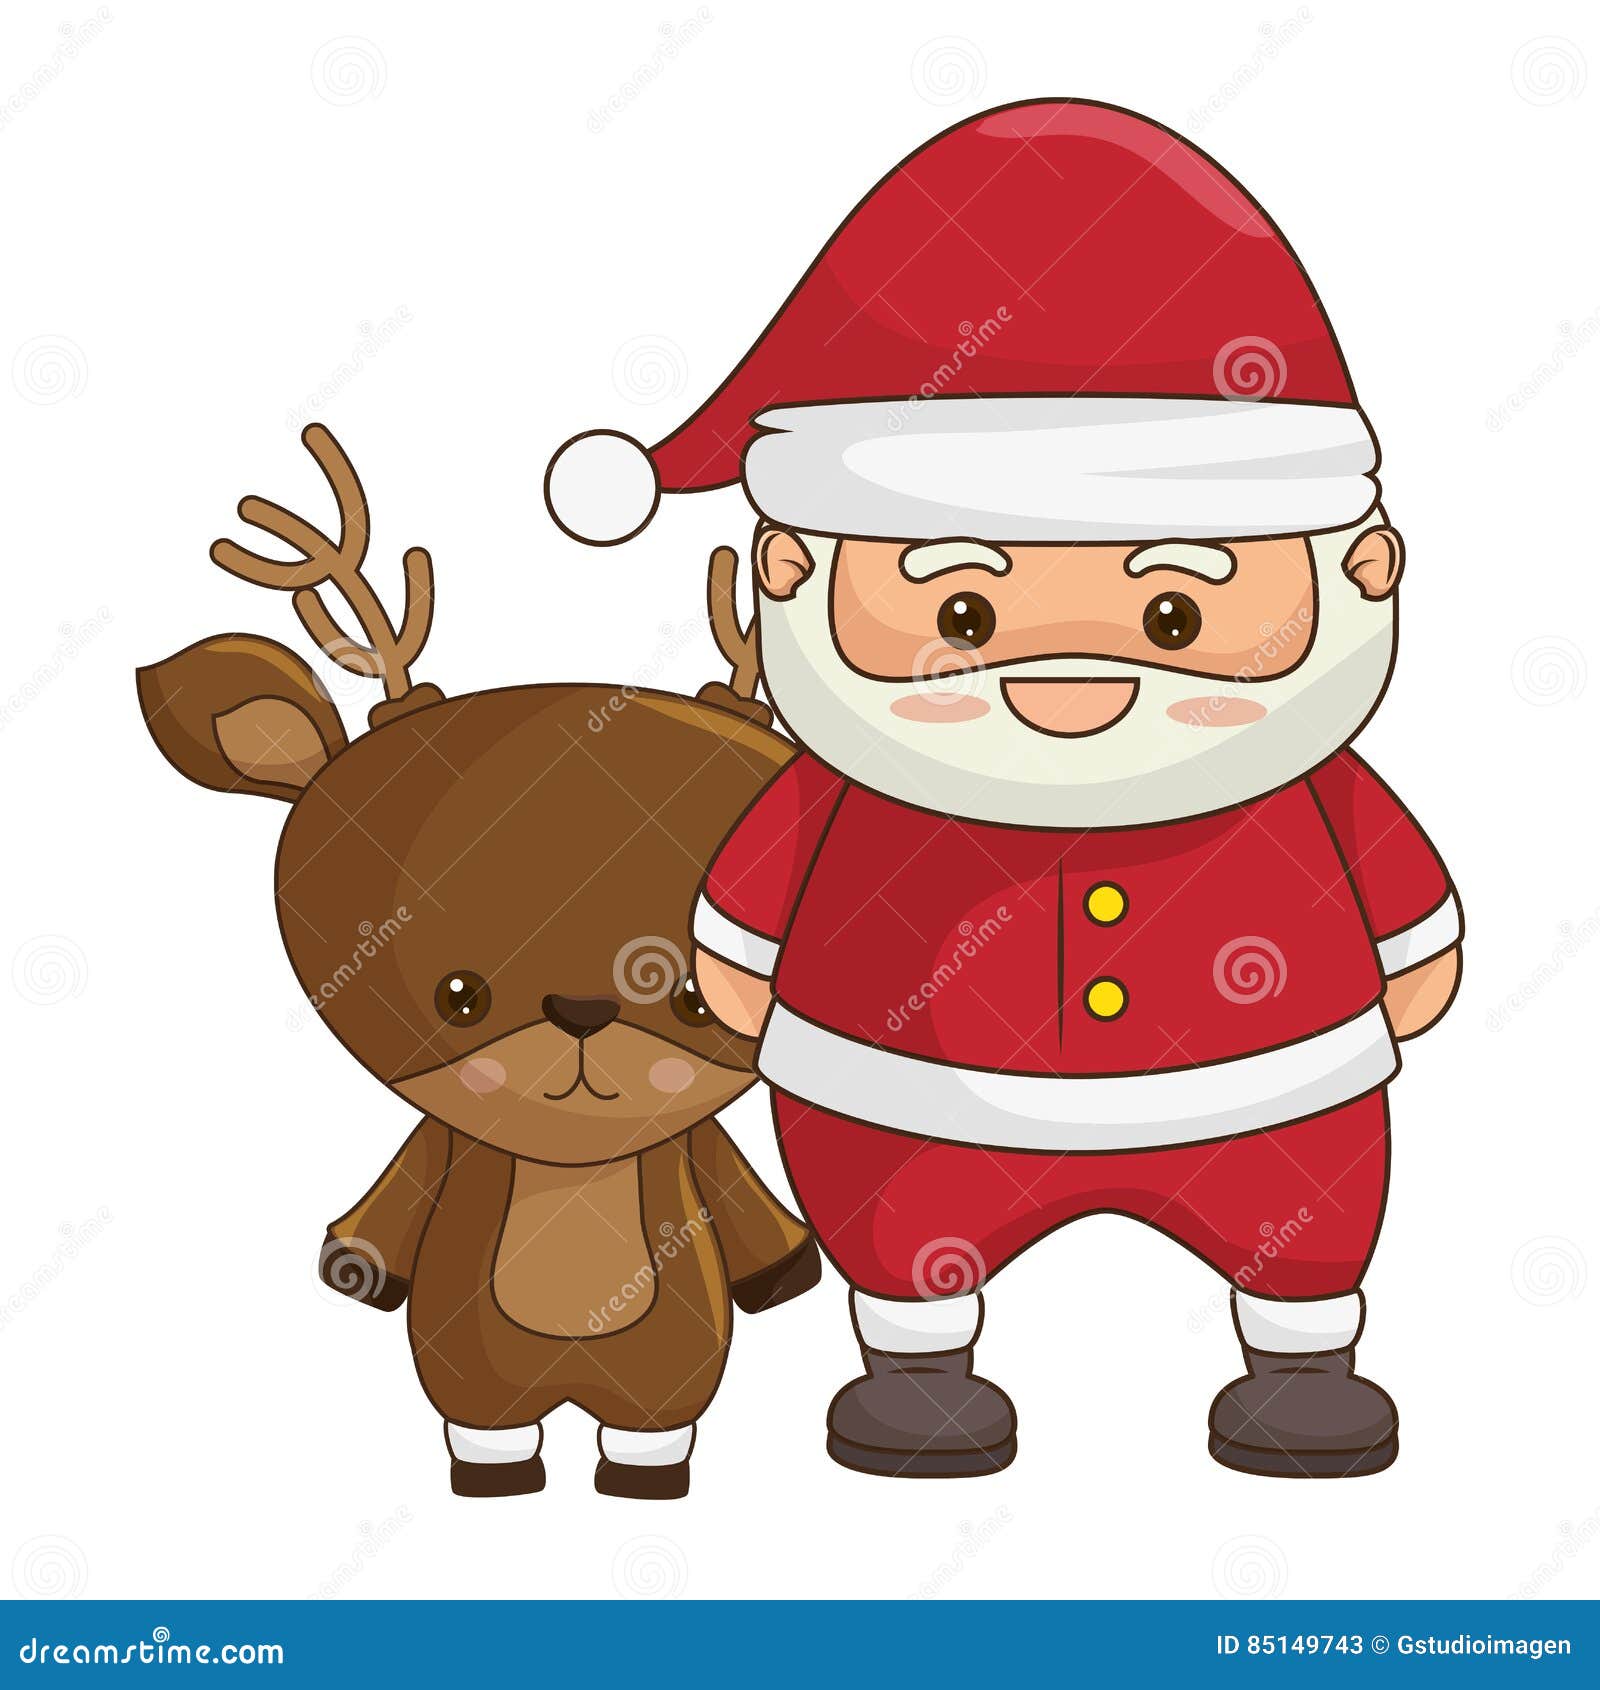 Disegni Di Natale Kawaii.Carattere Di Kawaii Del Babbo Natale Di Buon Natale Illustrazione Di Stock Illustrazione Di Vecchio Dicembre 85149743